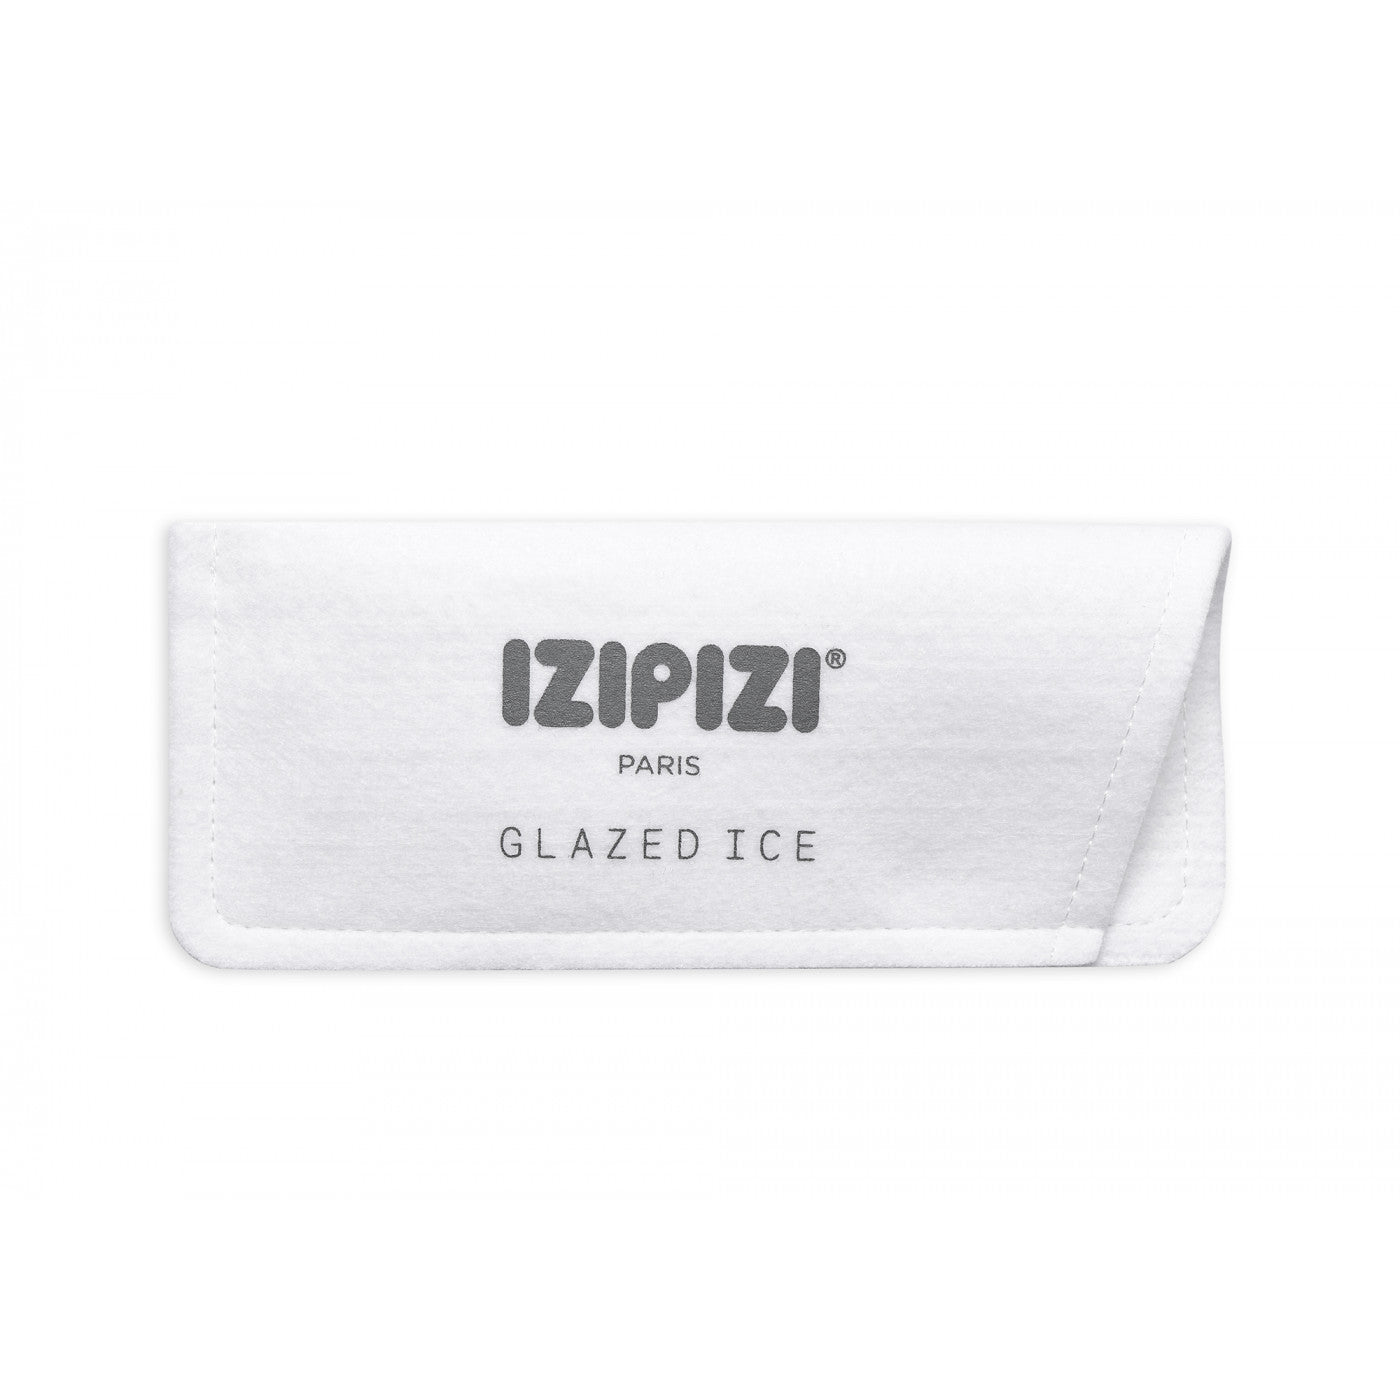 IZIPIZI Sunglass C - Glazed Ice 2021